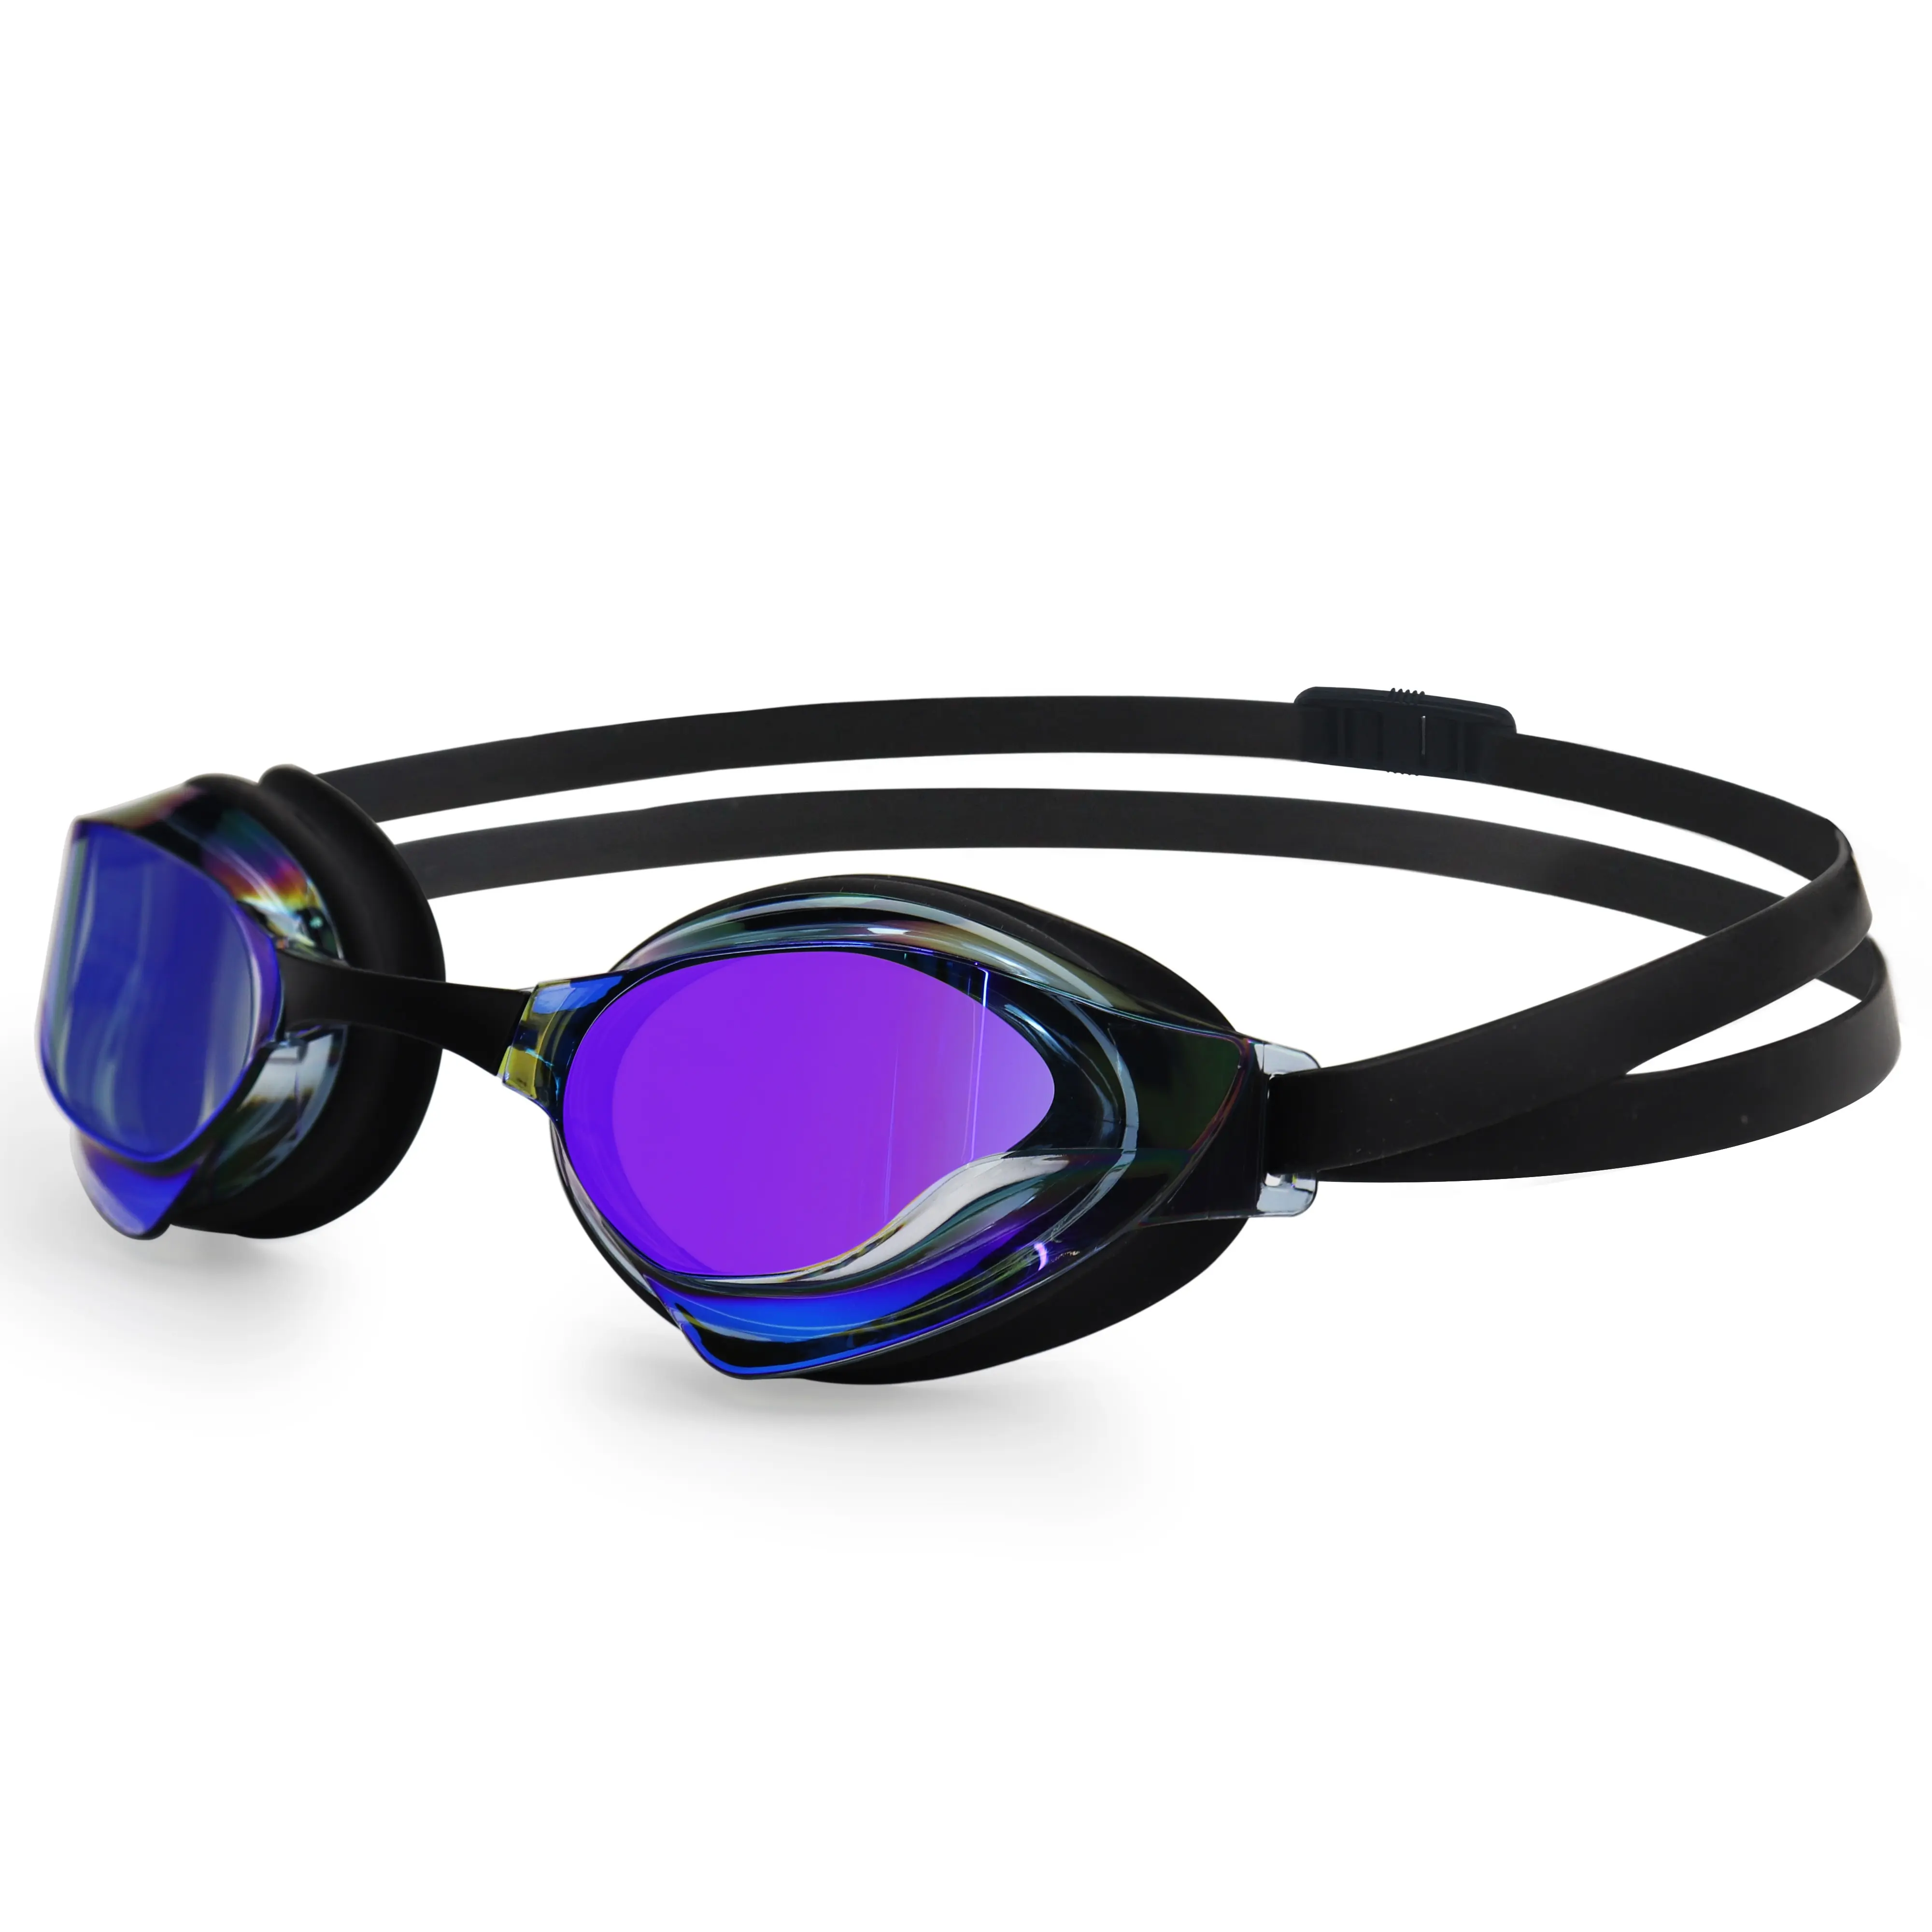 Kacamata renang kompetisi balap pemuda dewasa, lensa lapisan cermin anti-kabut perlindungan UV